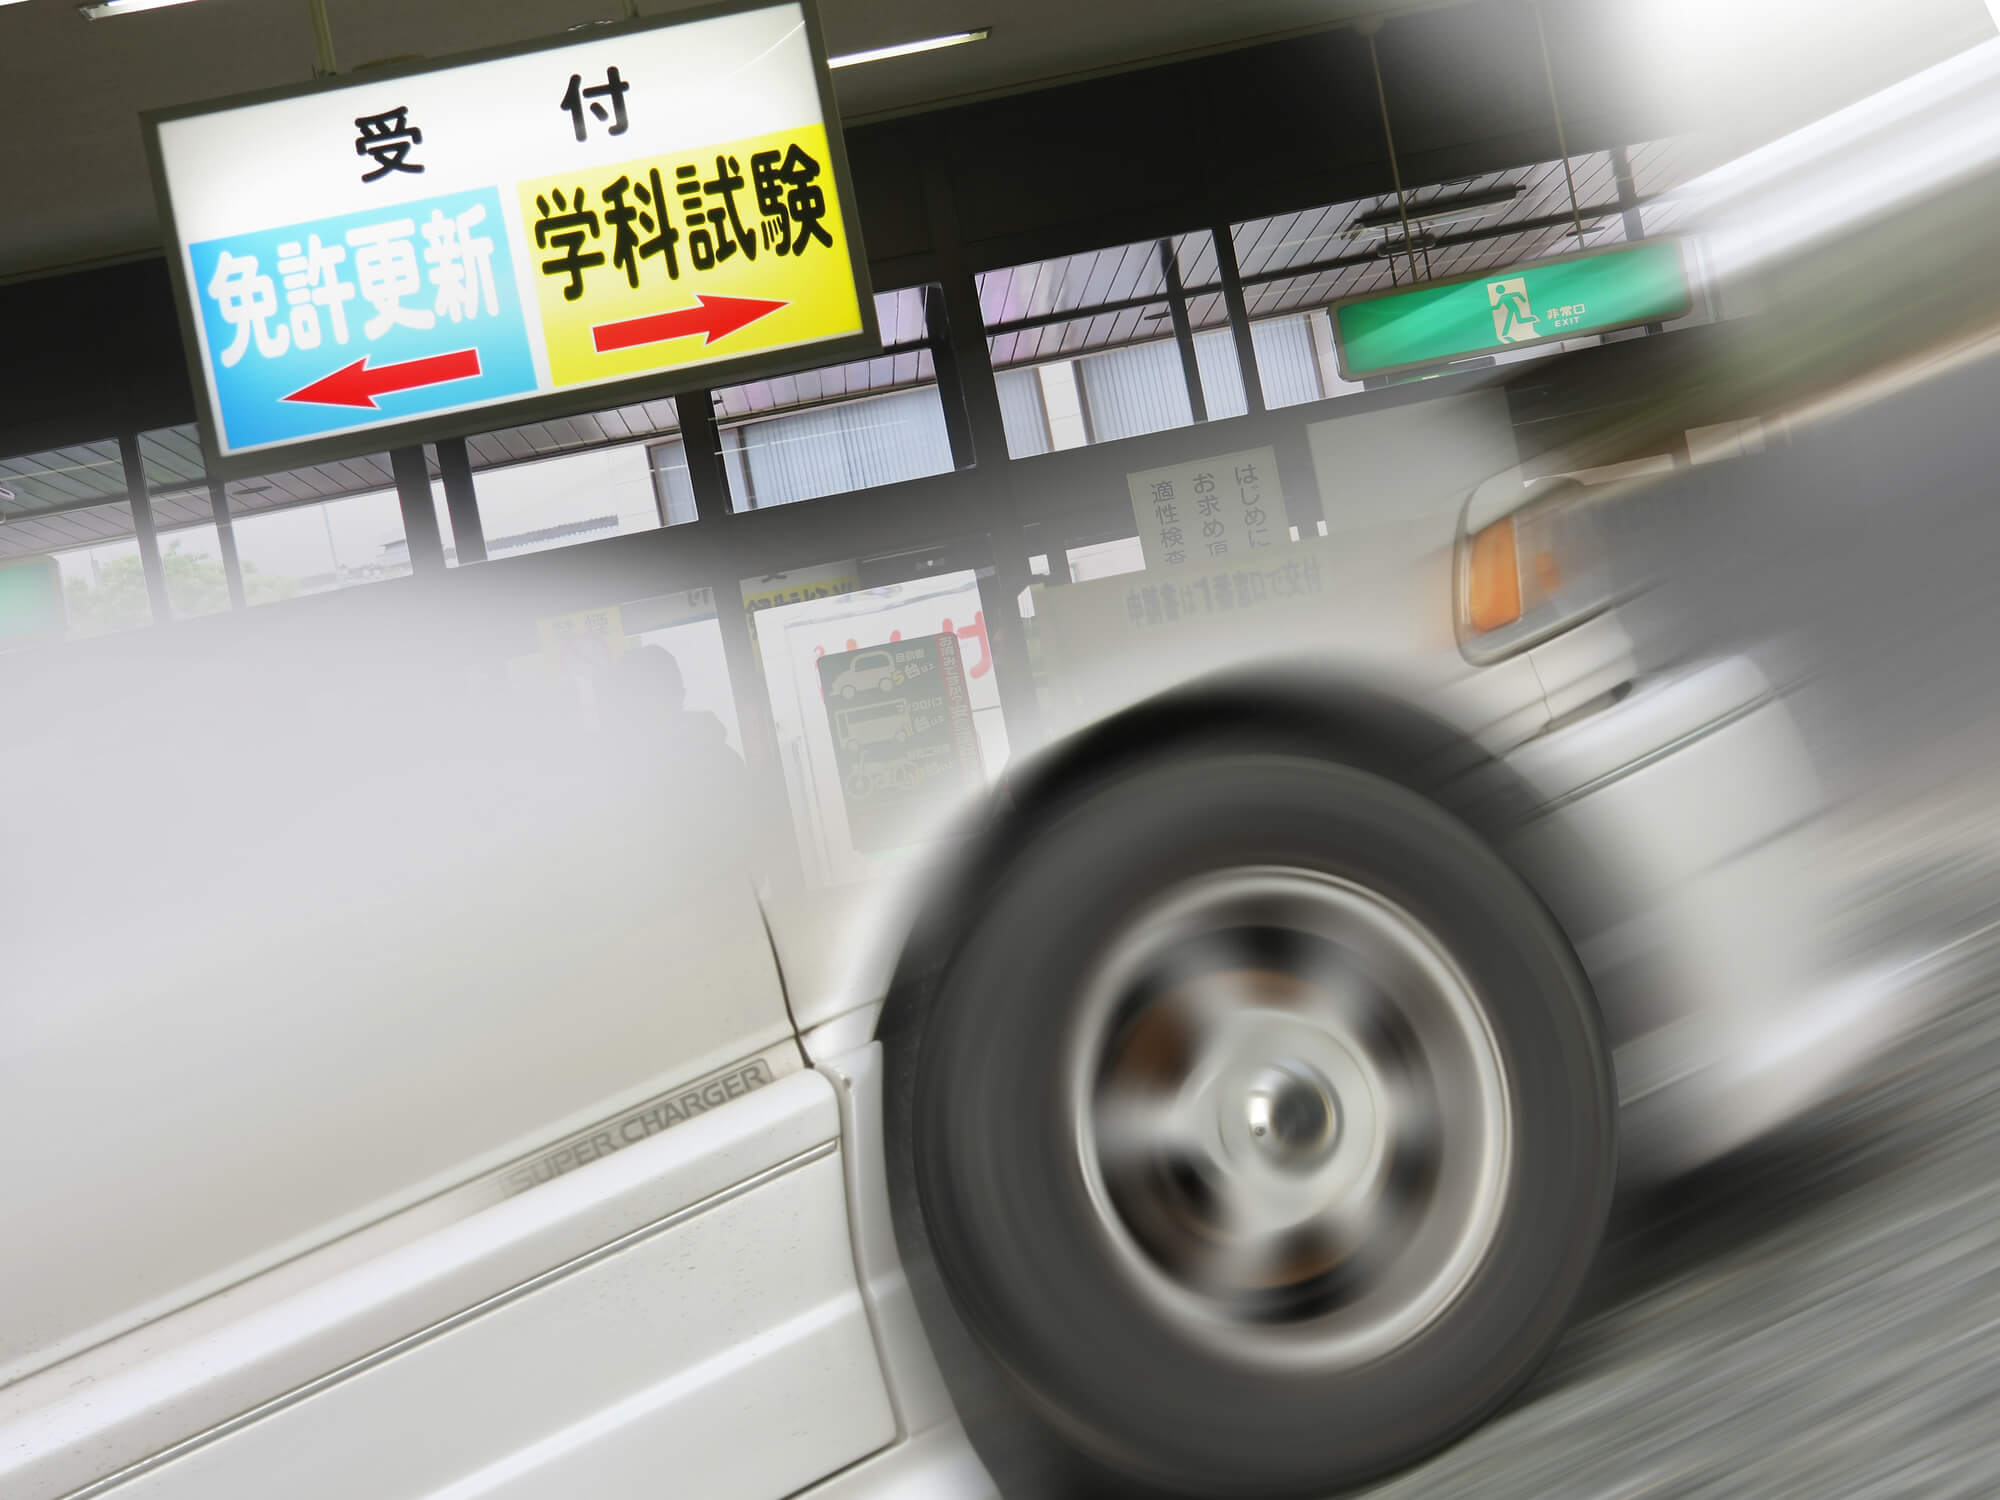 免許を取りたい東京都民の方へ 免許センター 試験場ガイド 武蔵境自動車教習所